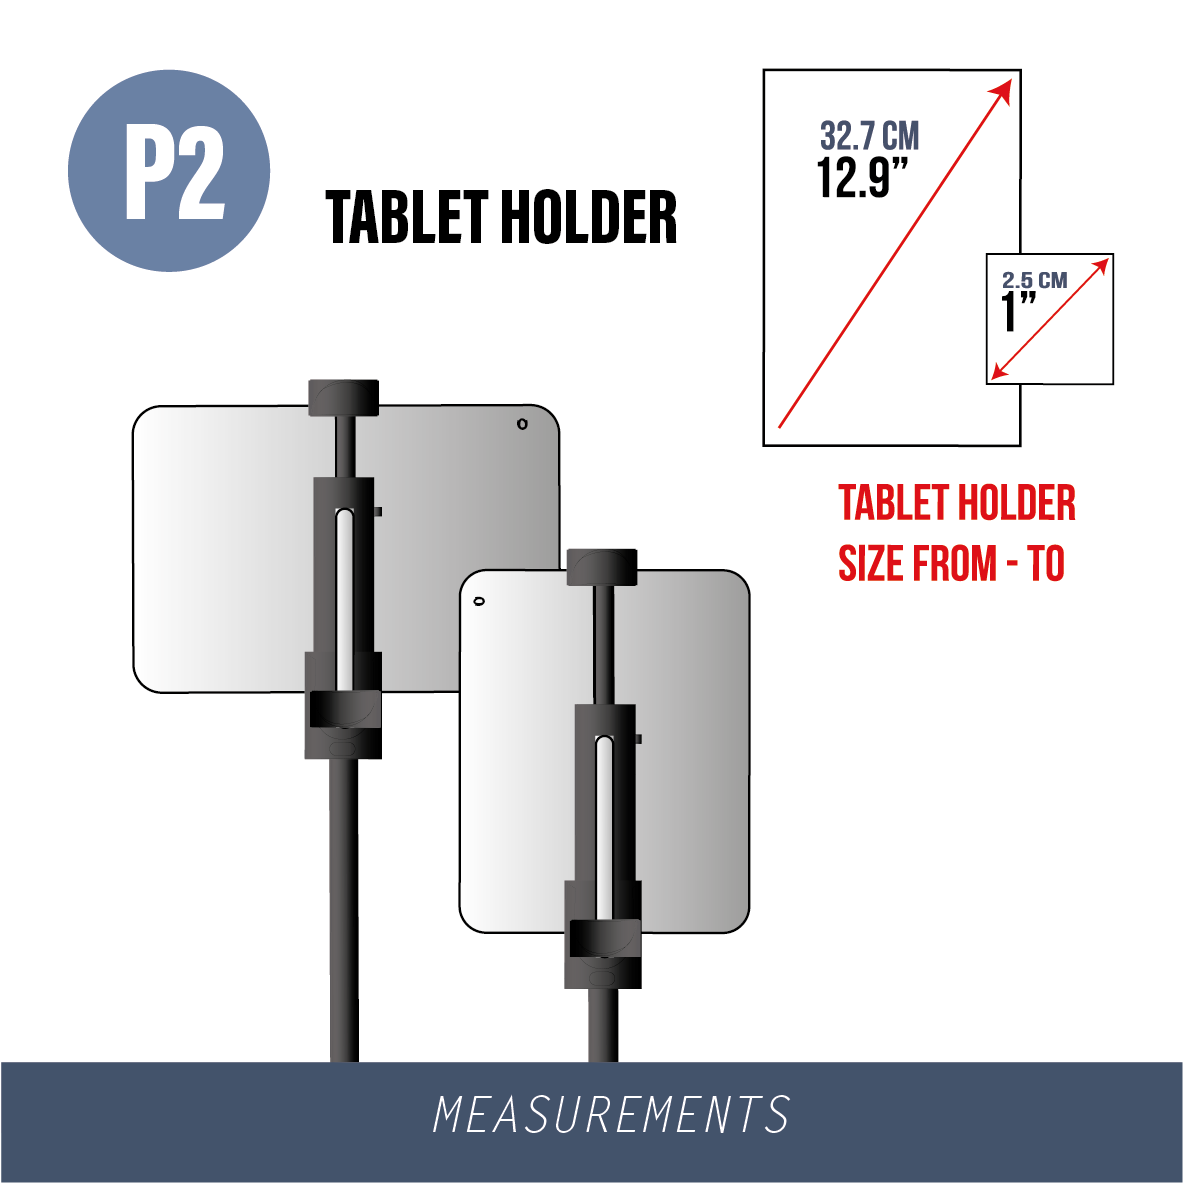 P2-TABLET HOLDER